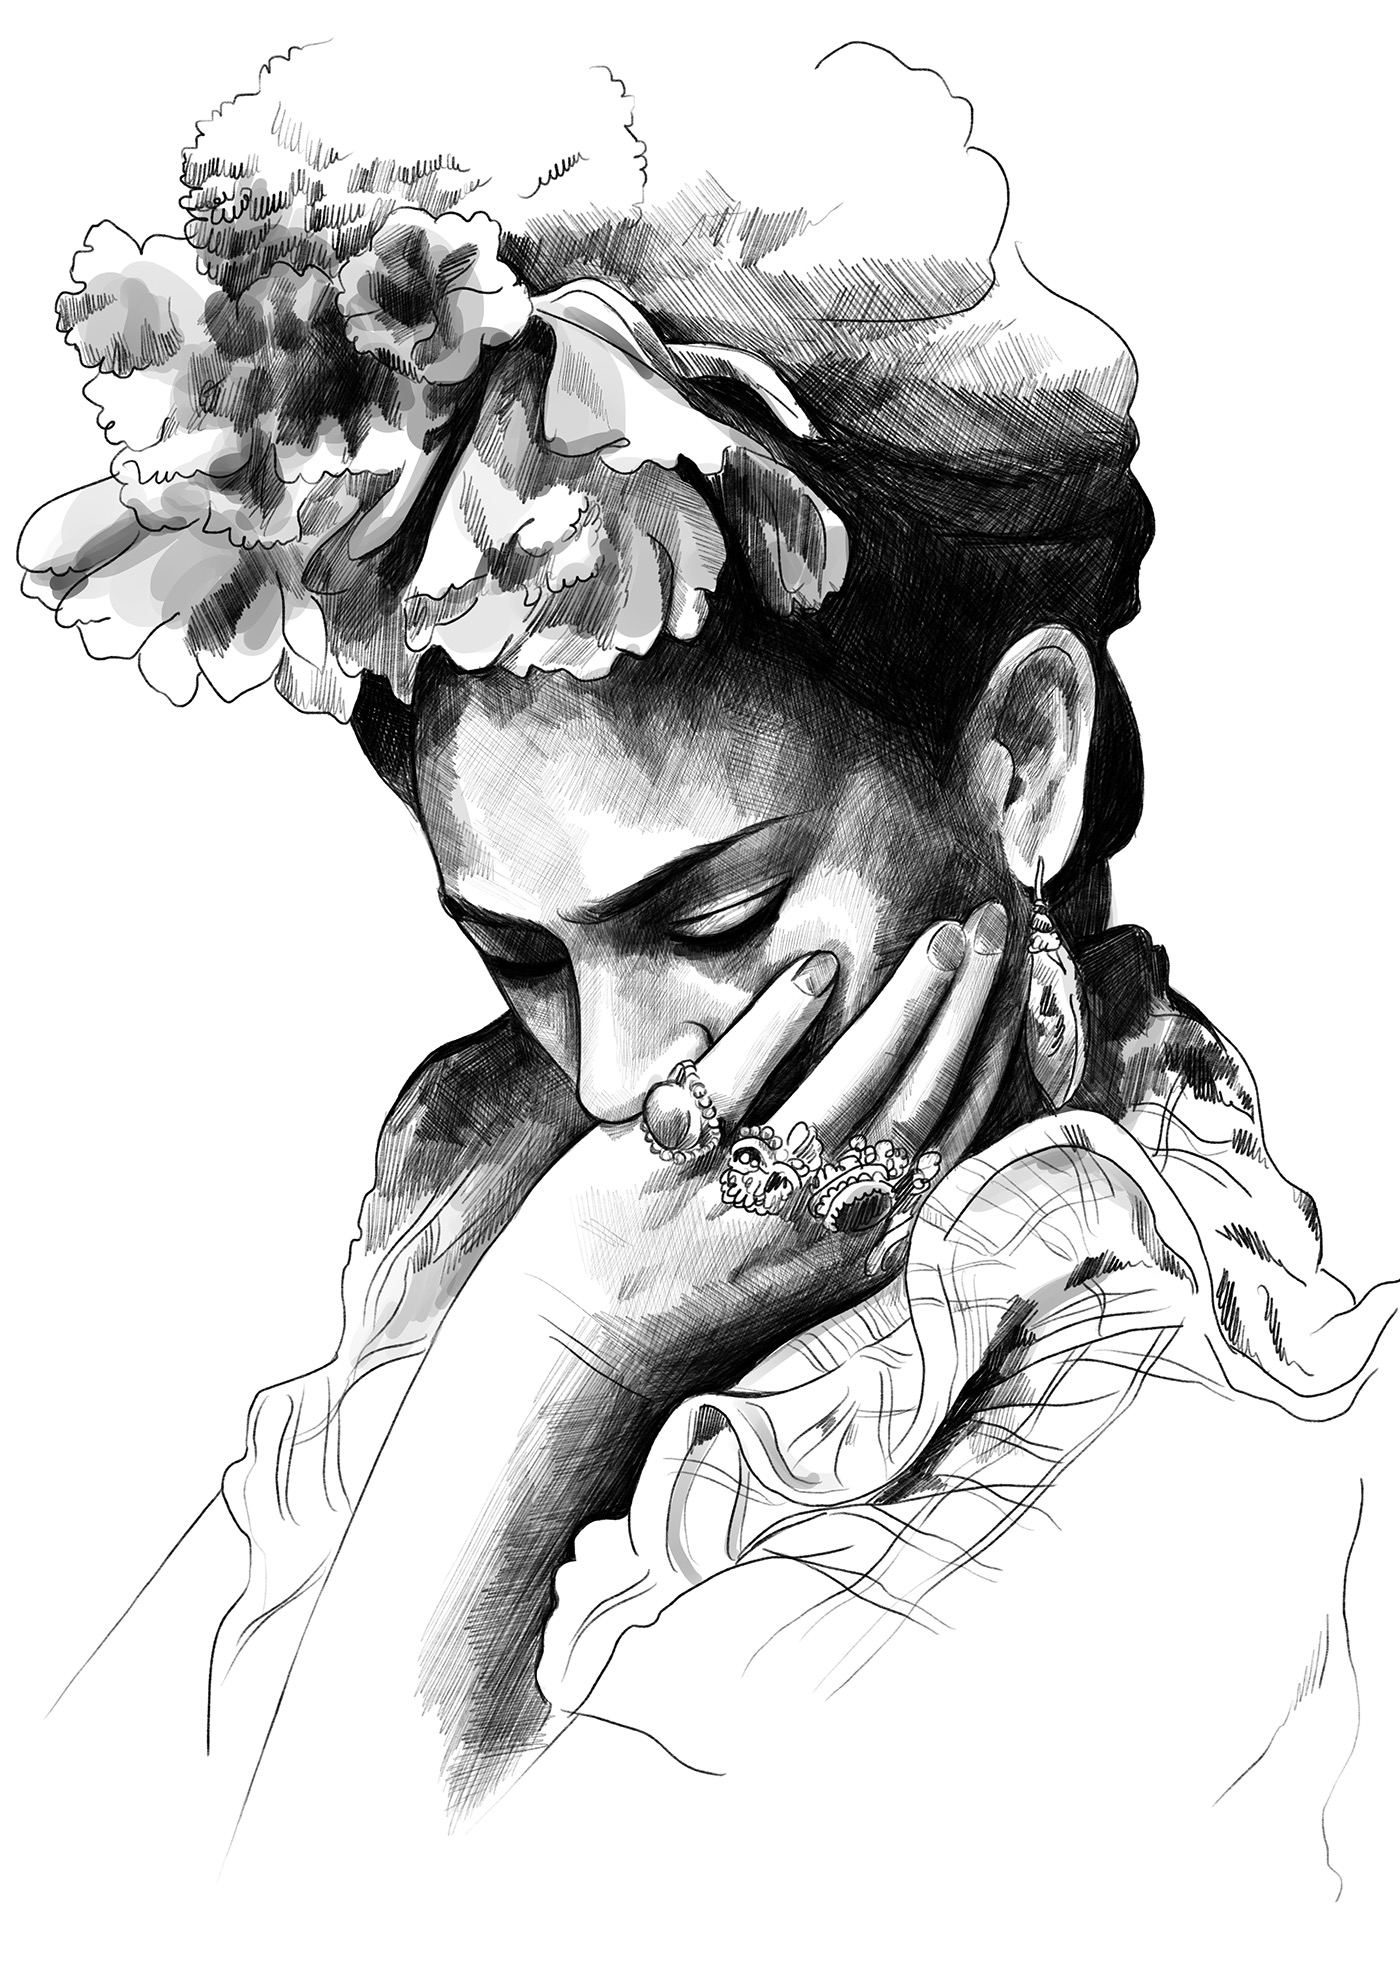 frida kahlo woman painter feminist heart Icon artist tribute portrait pencil